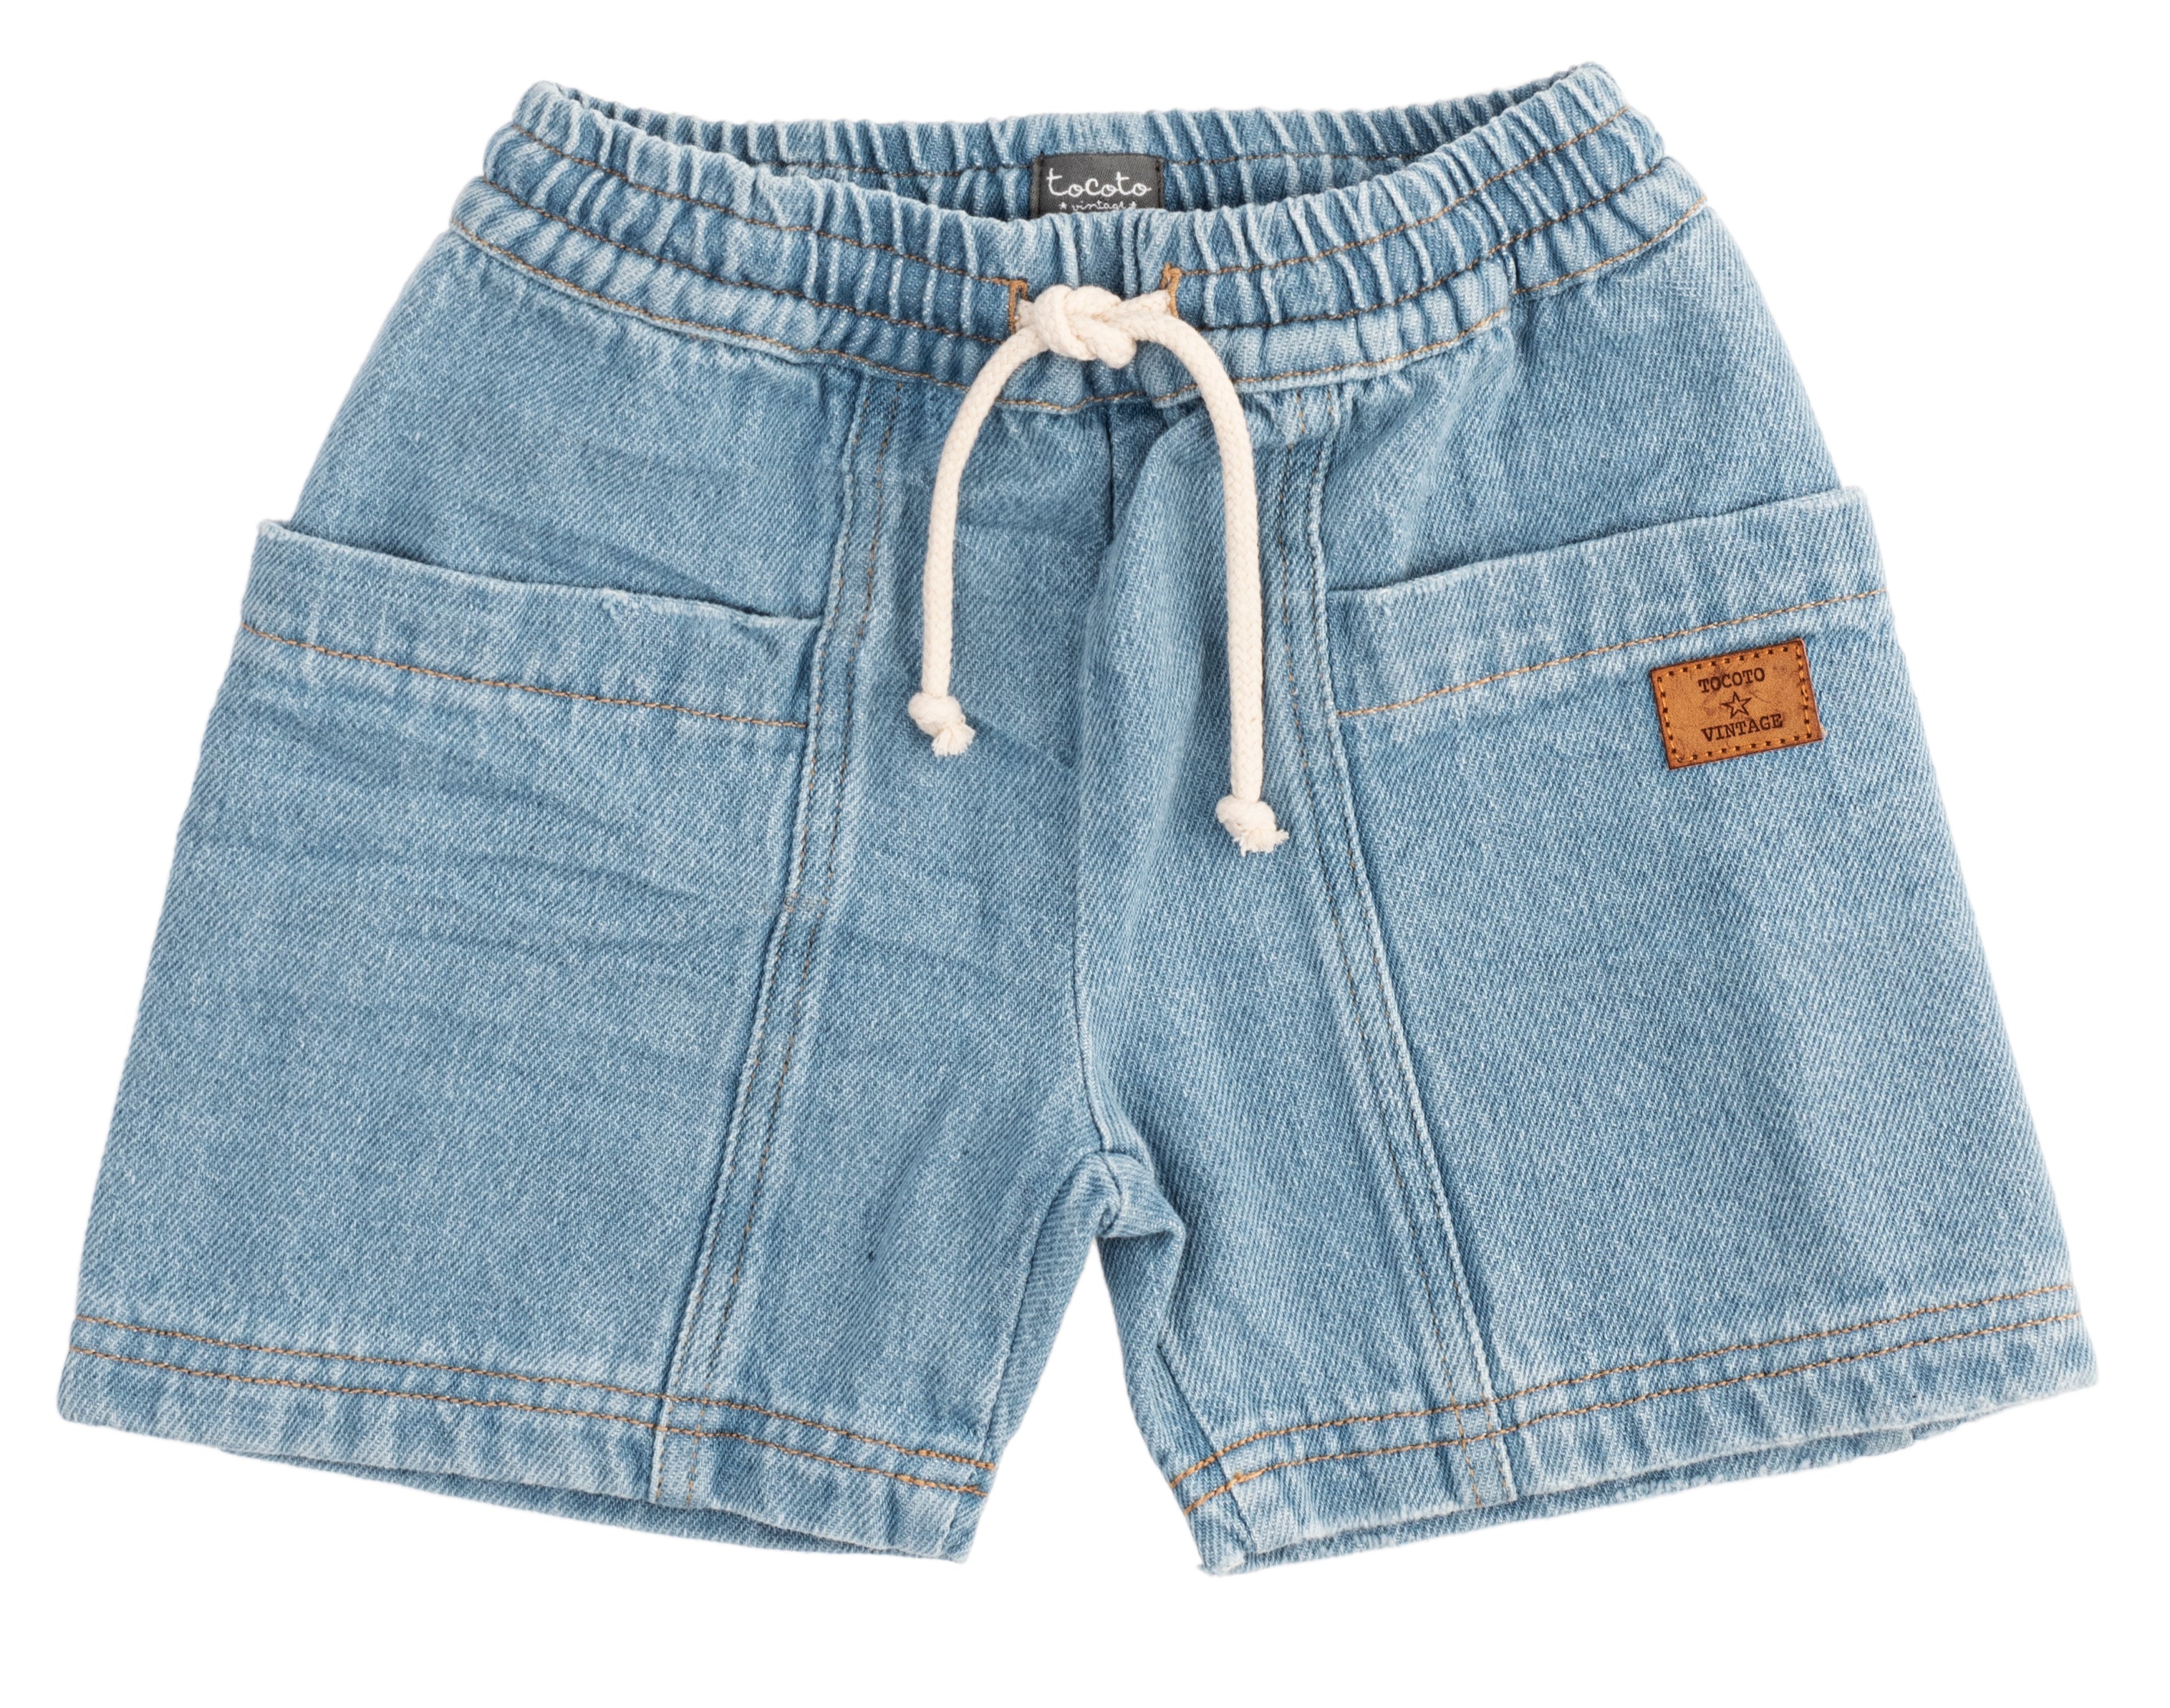 Tocoto Vintage Blue Jean Shorts - Blue